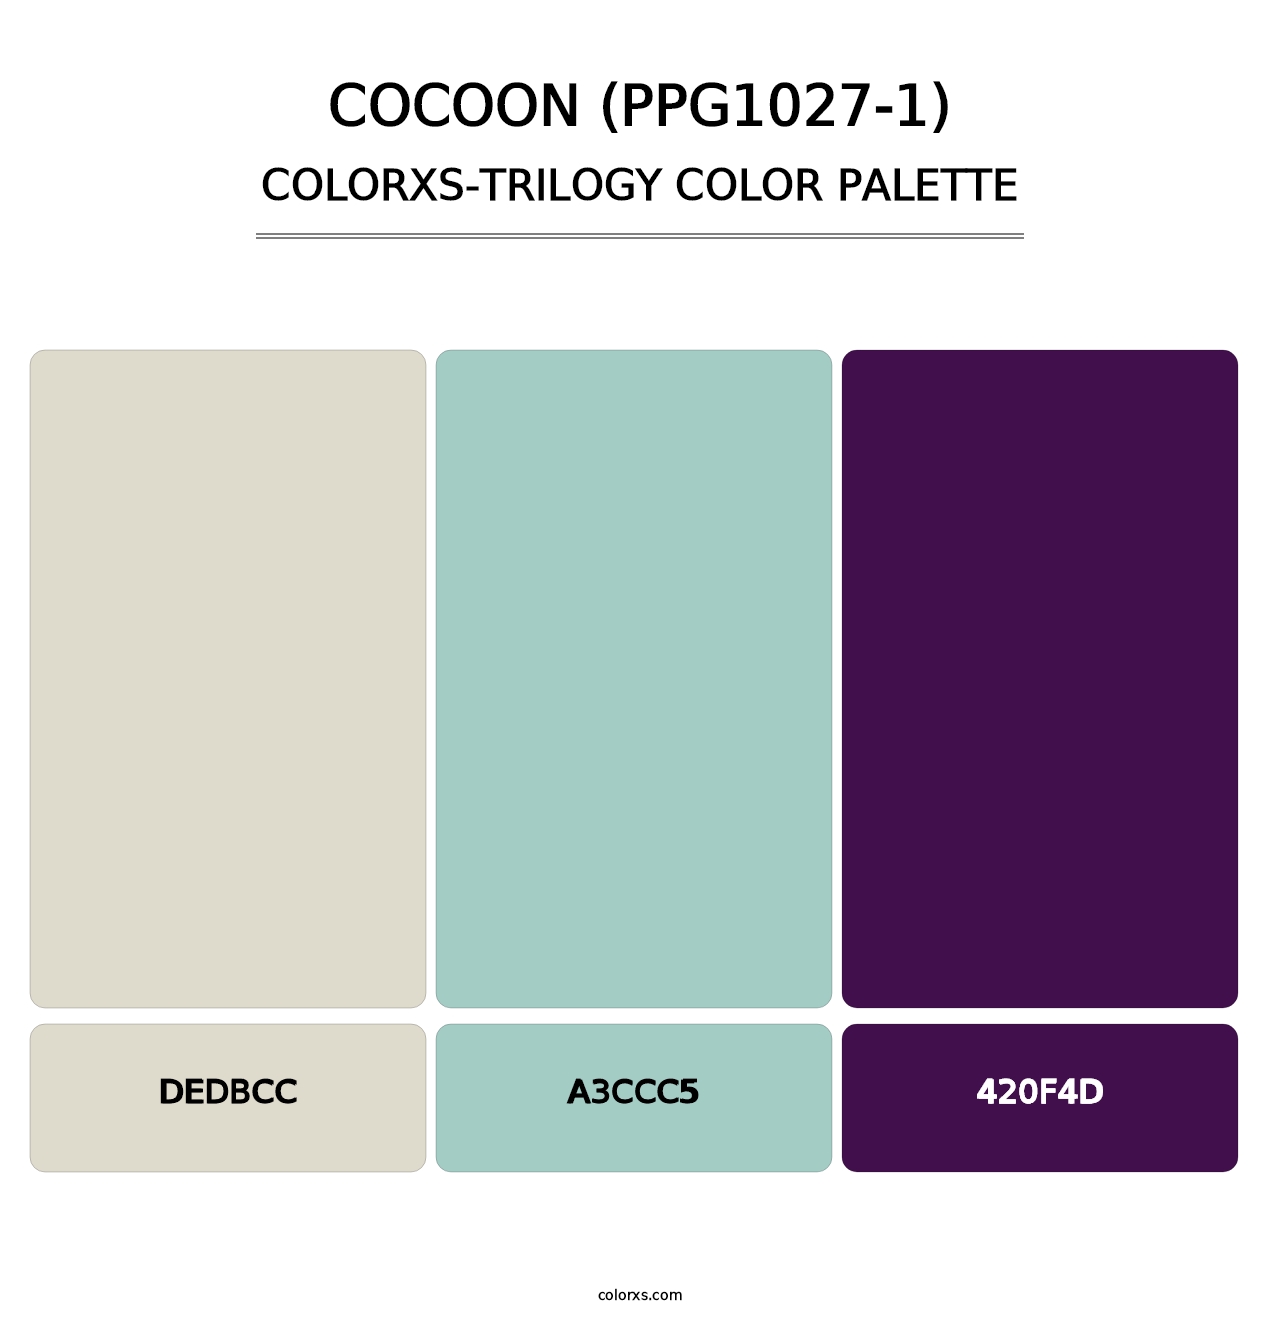 Cocoon (PPG1027-1) - Colorxs Trilogy Palette